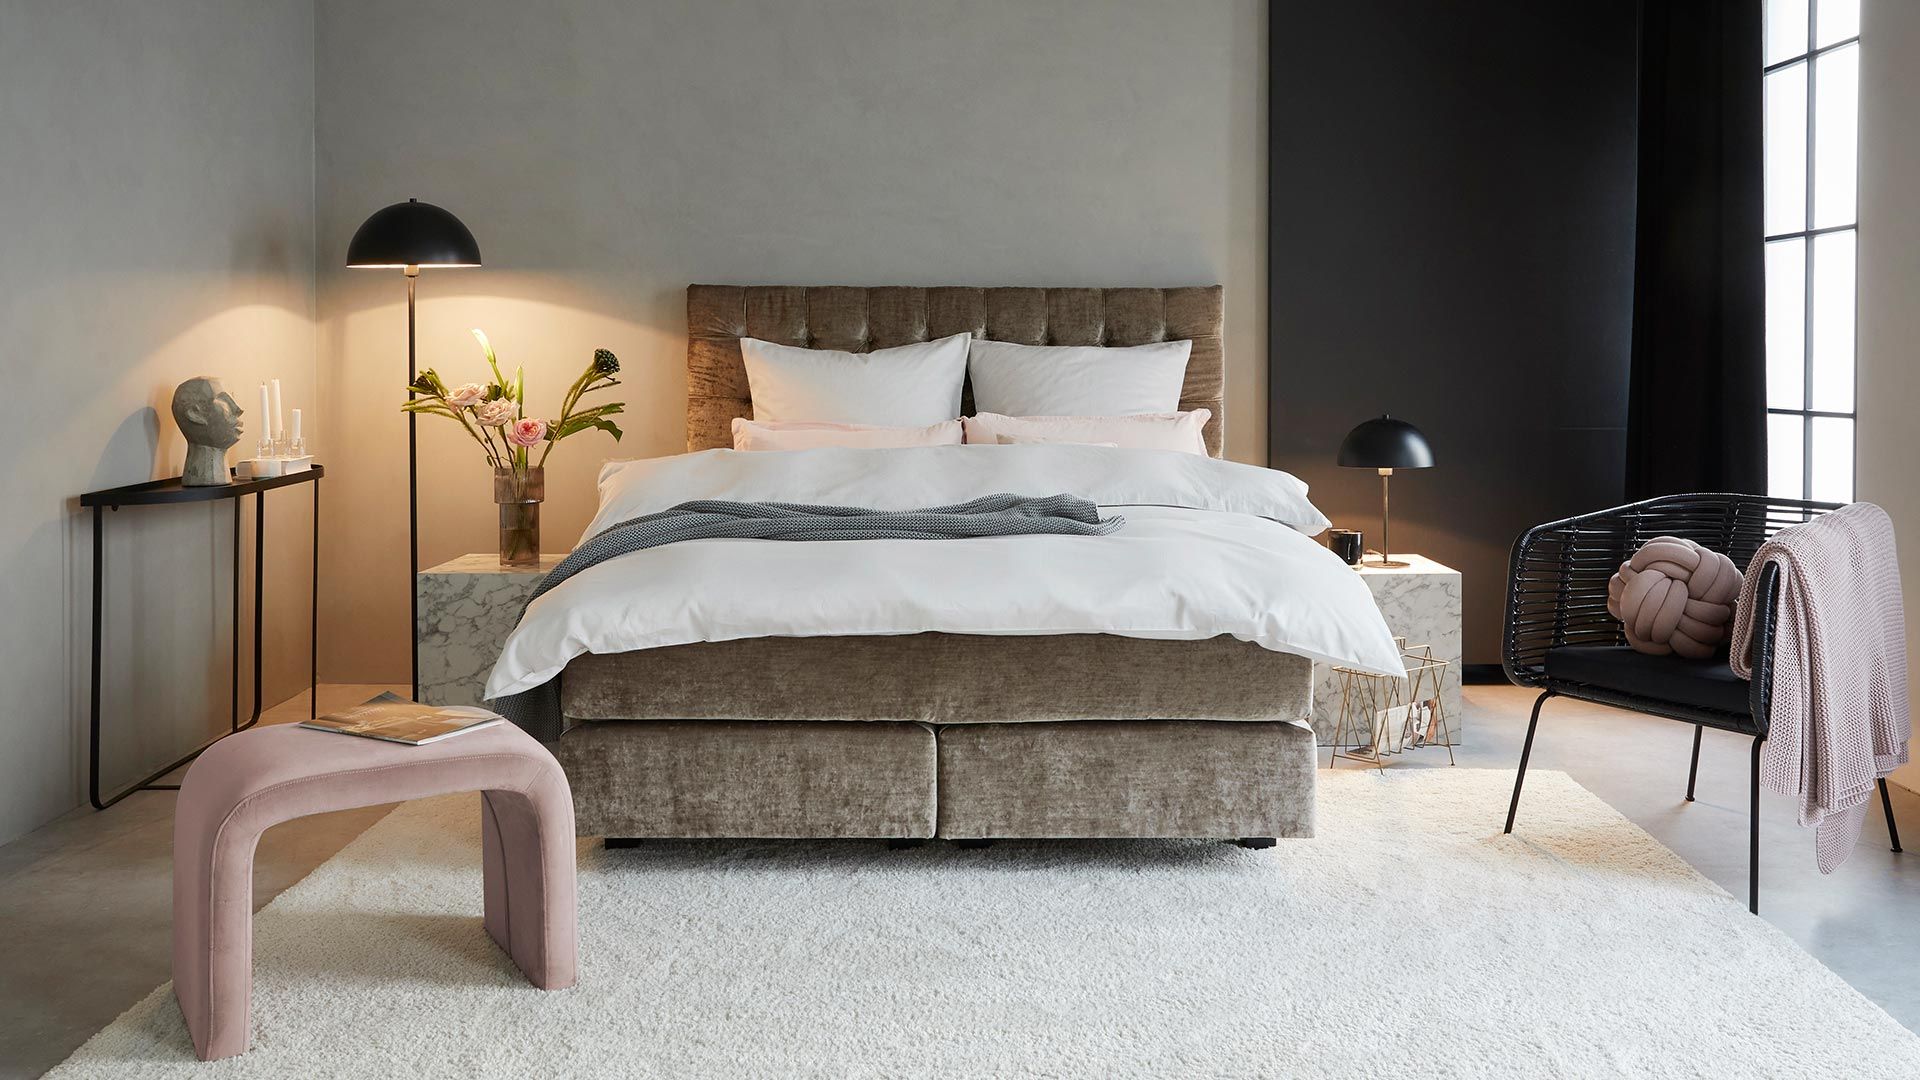 Interessante Designideen für glamouröse Schlafzimmer - Fresh Ideen